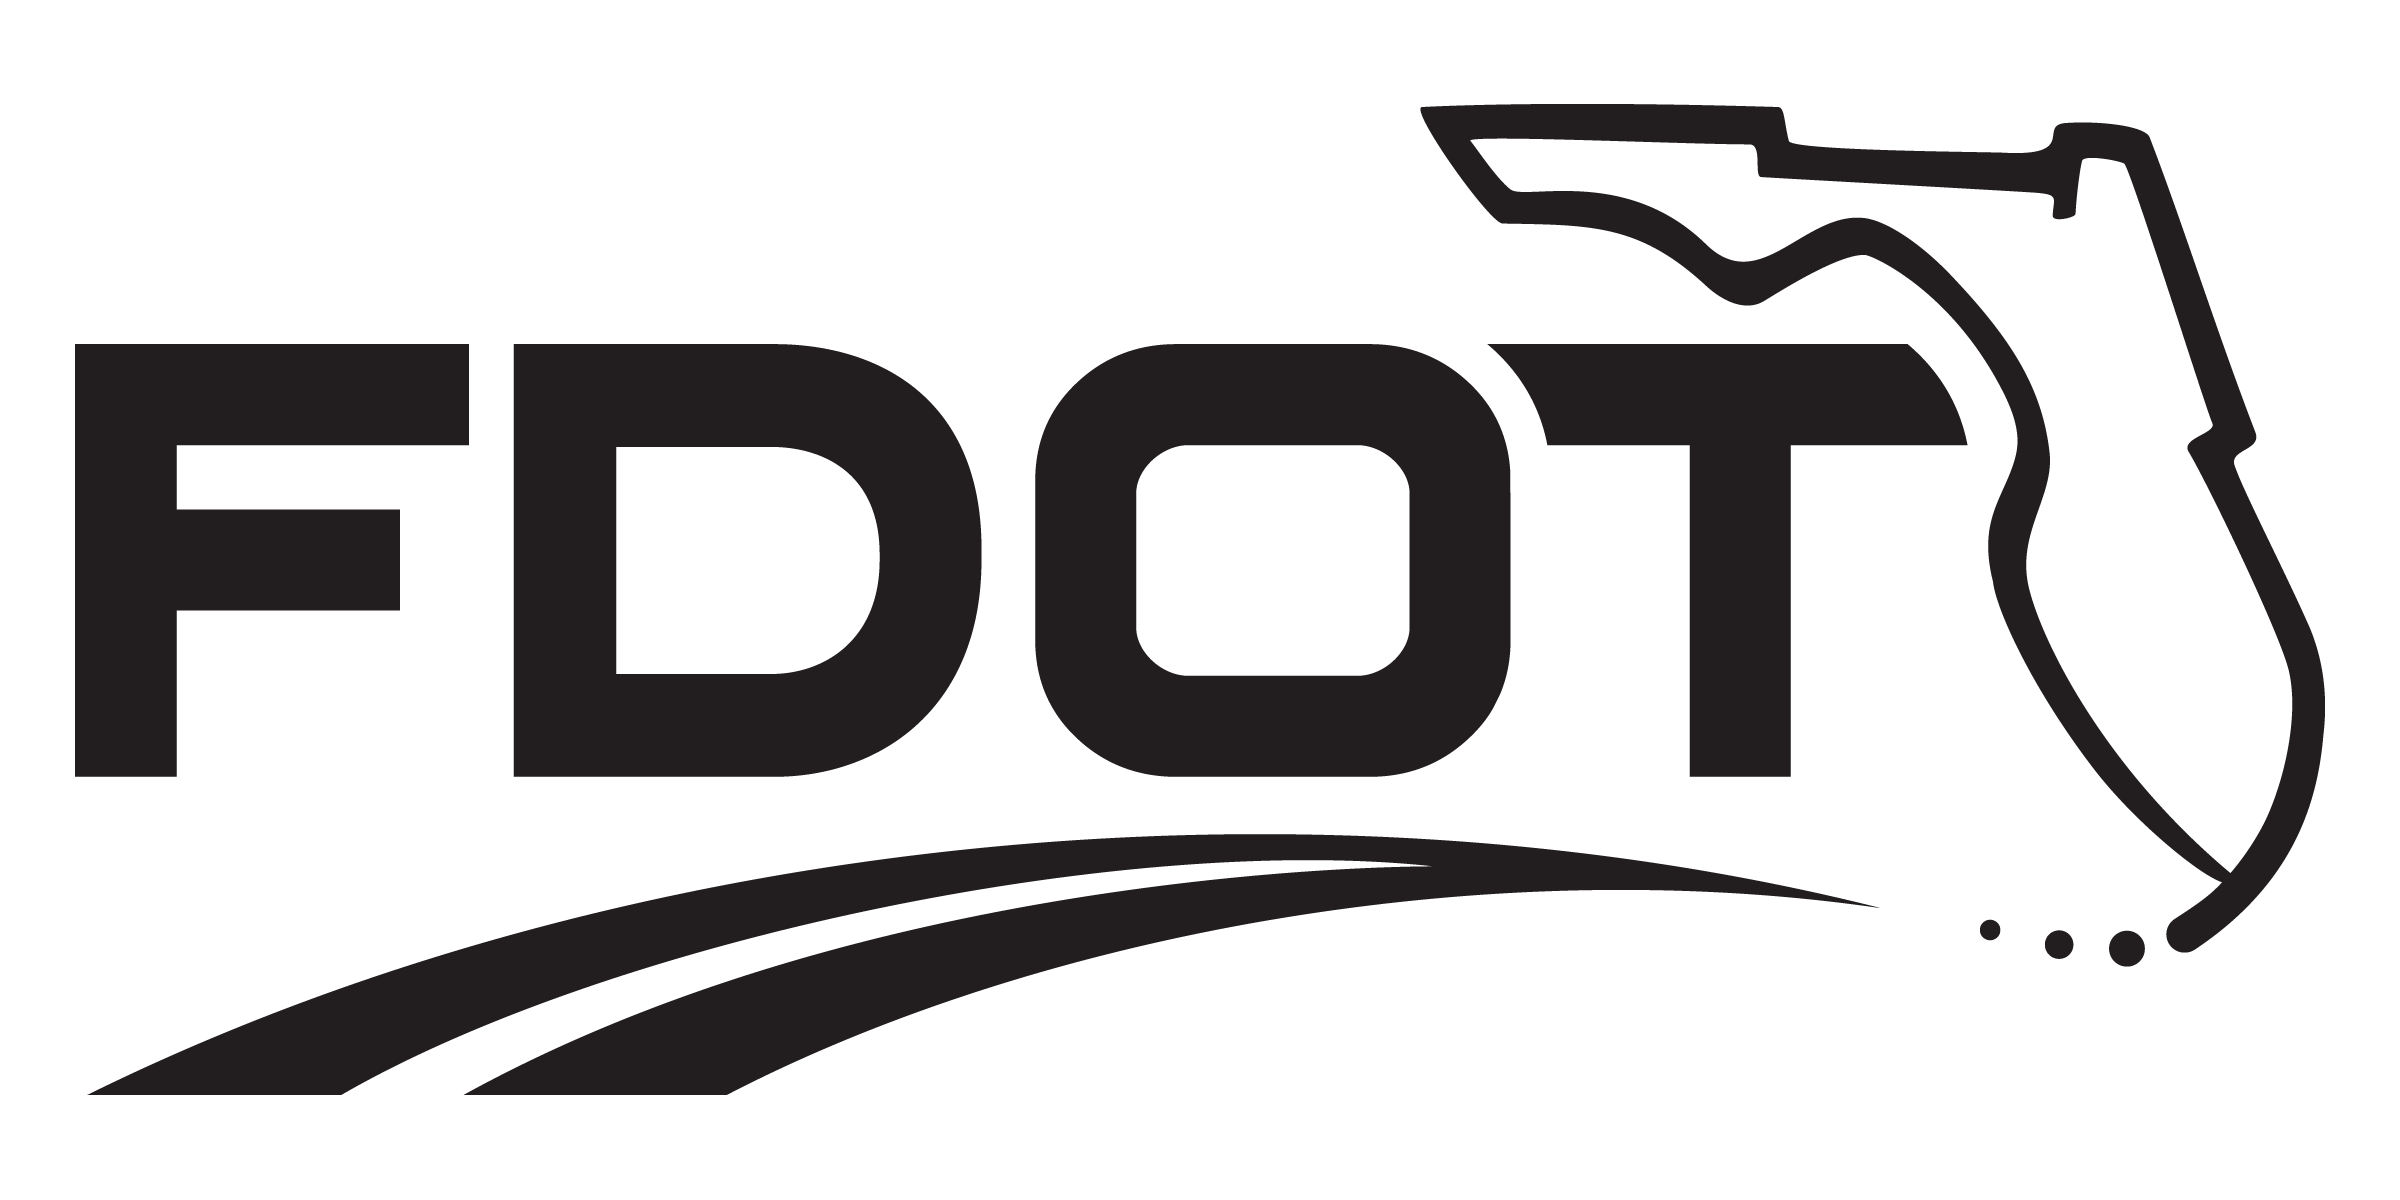 FDOT Logo - FDOT Logos